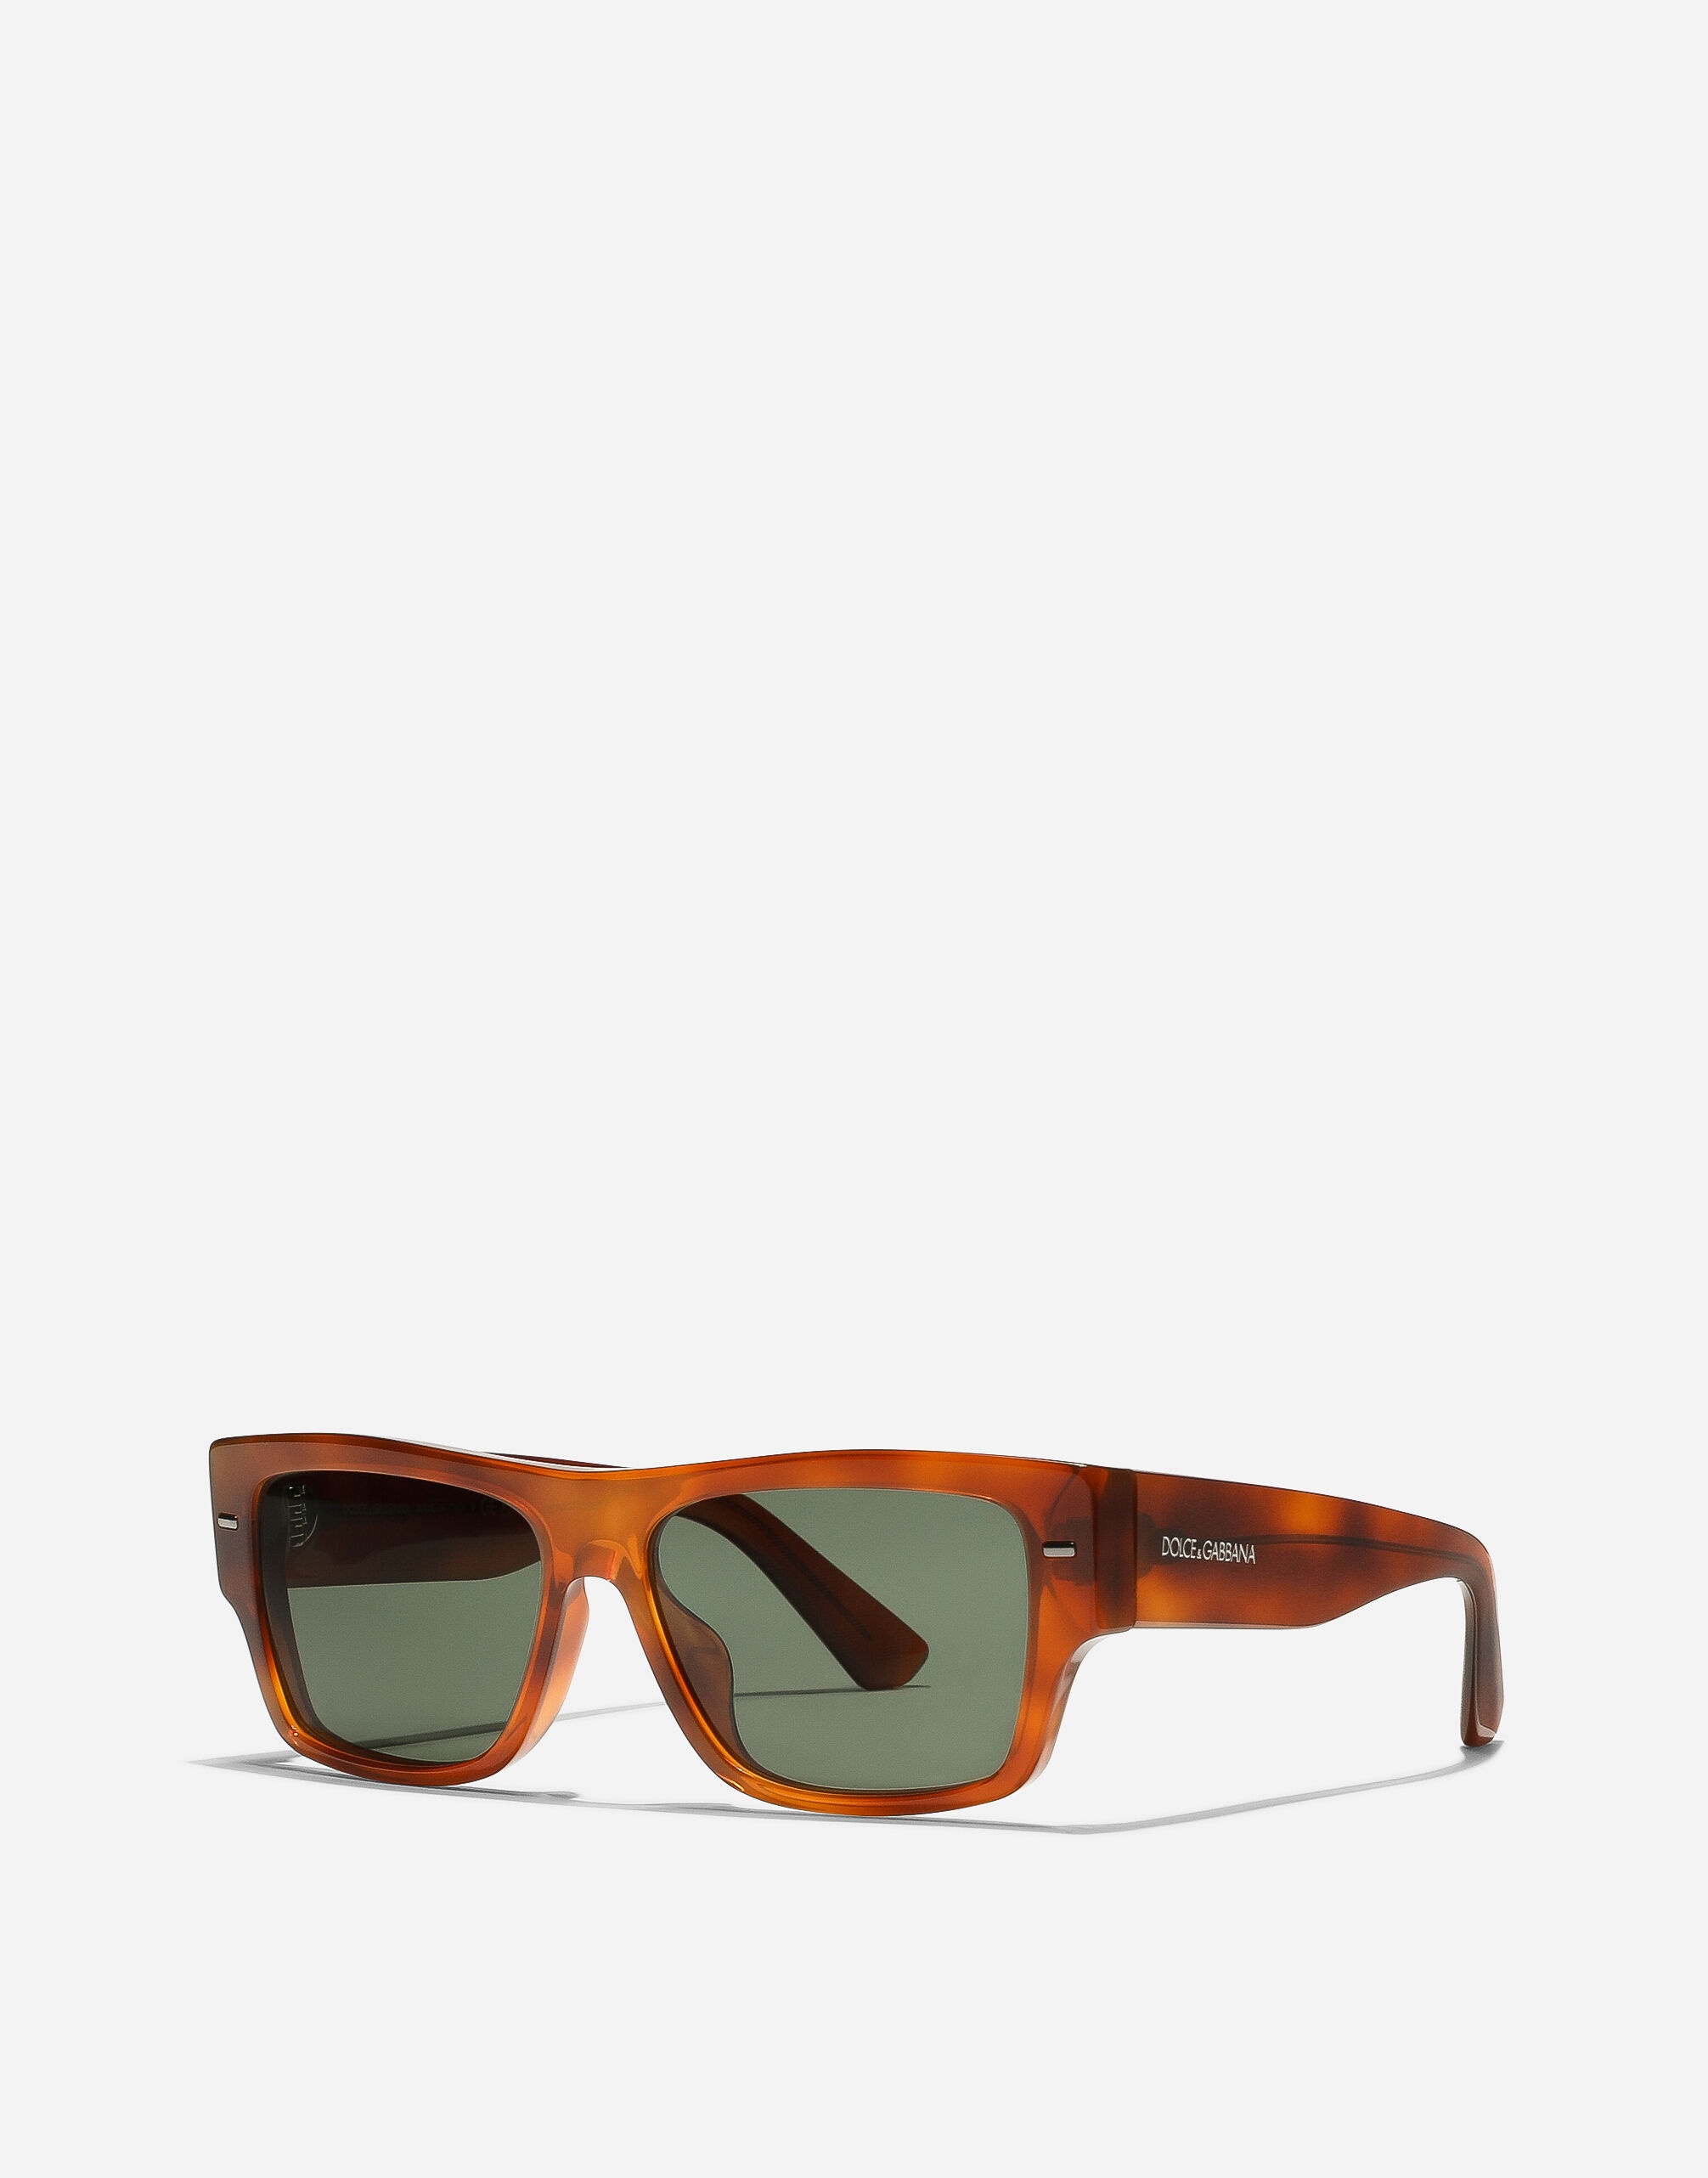 Lusso Sartoriale sunglasses - 6